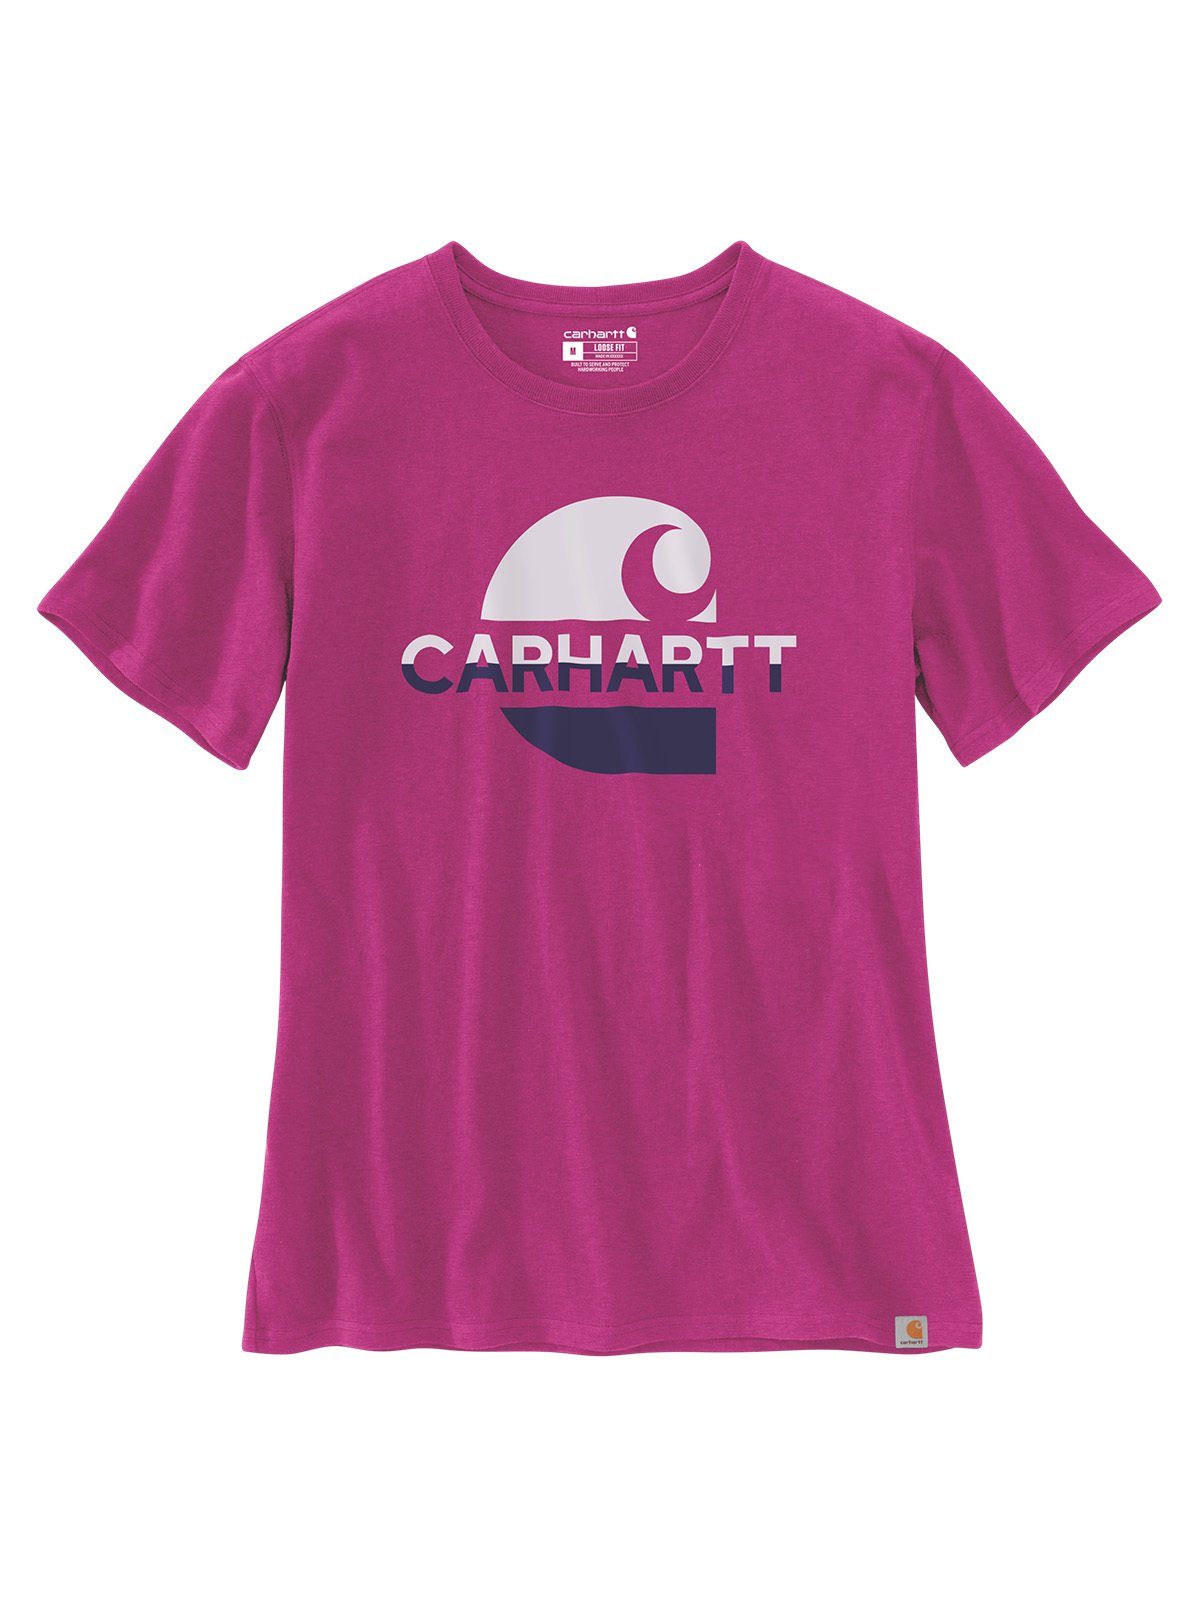 Carhartt magenta T-Shirt agate Carhartt Damen pink Graphic T-Shirt